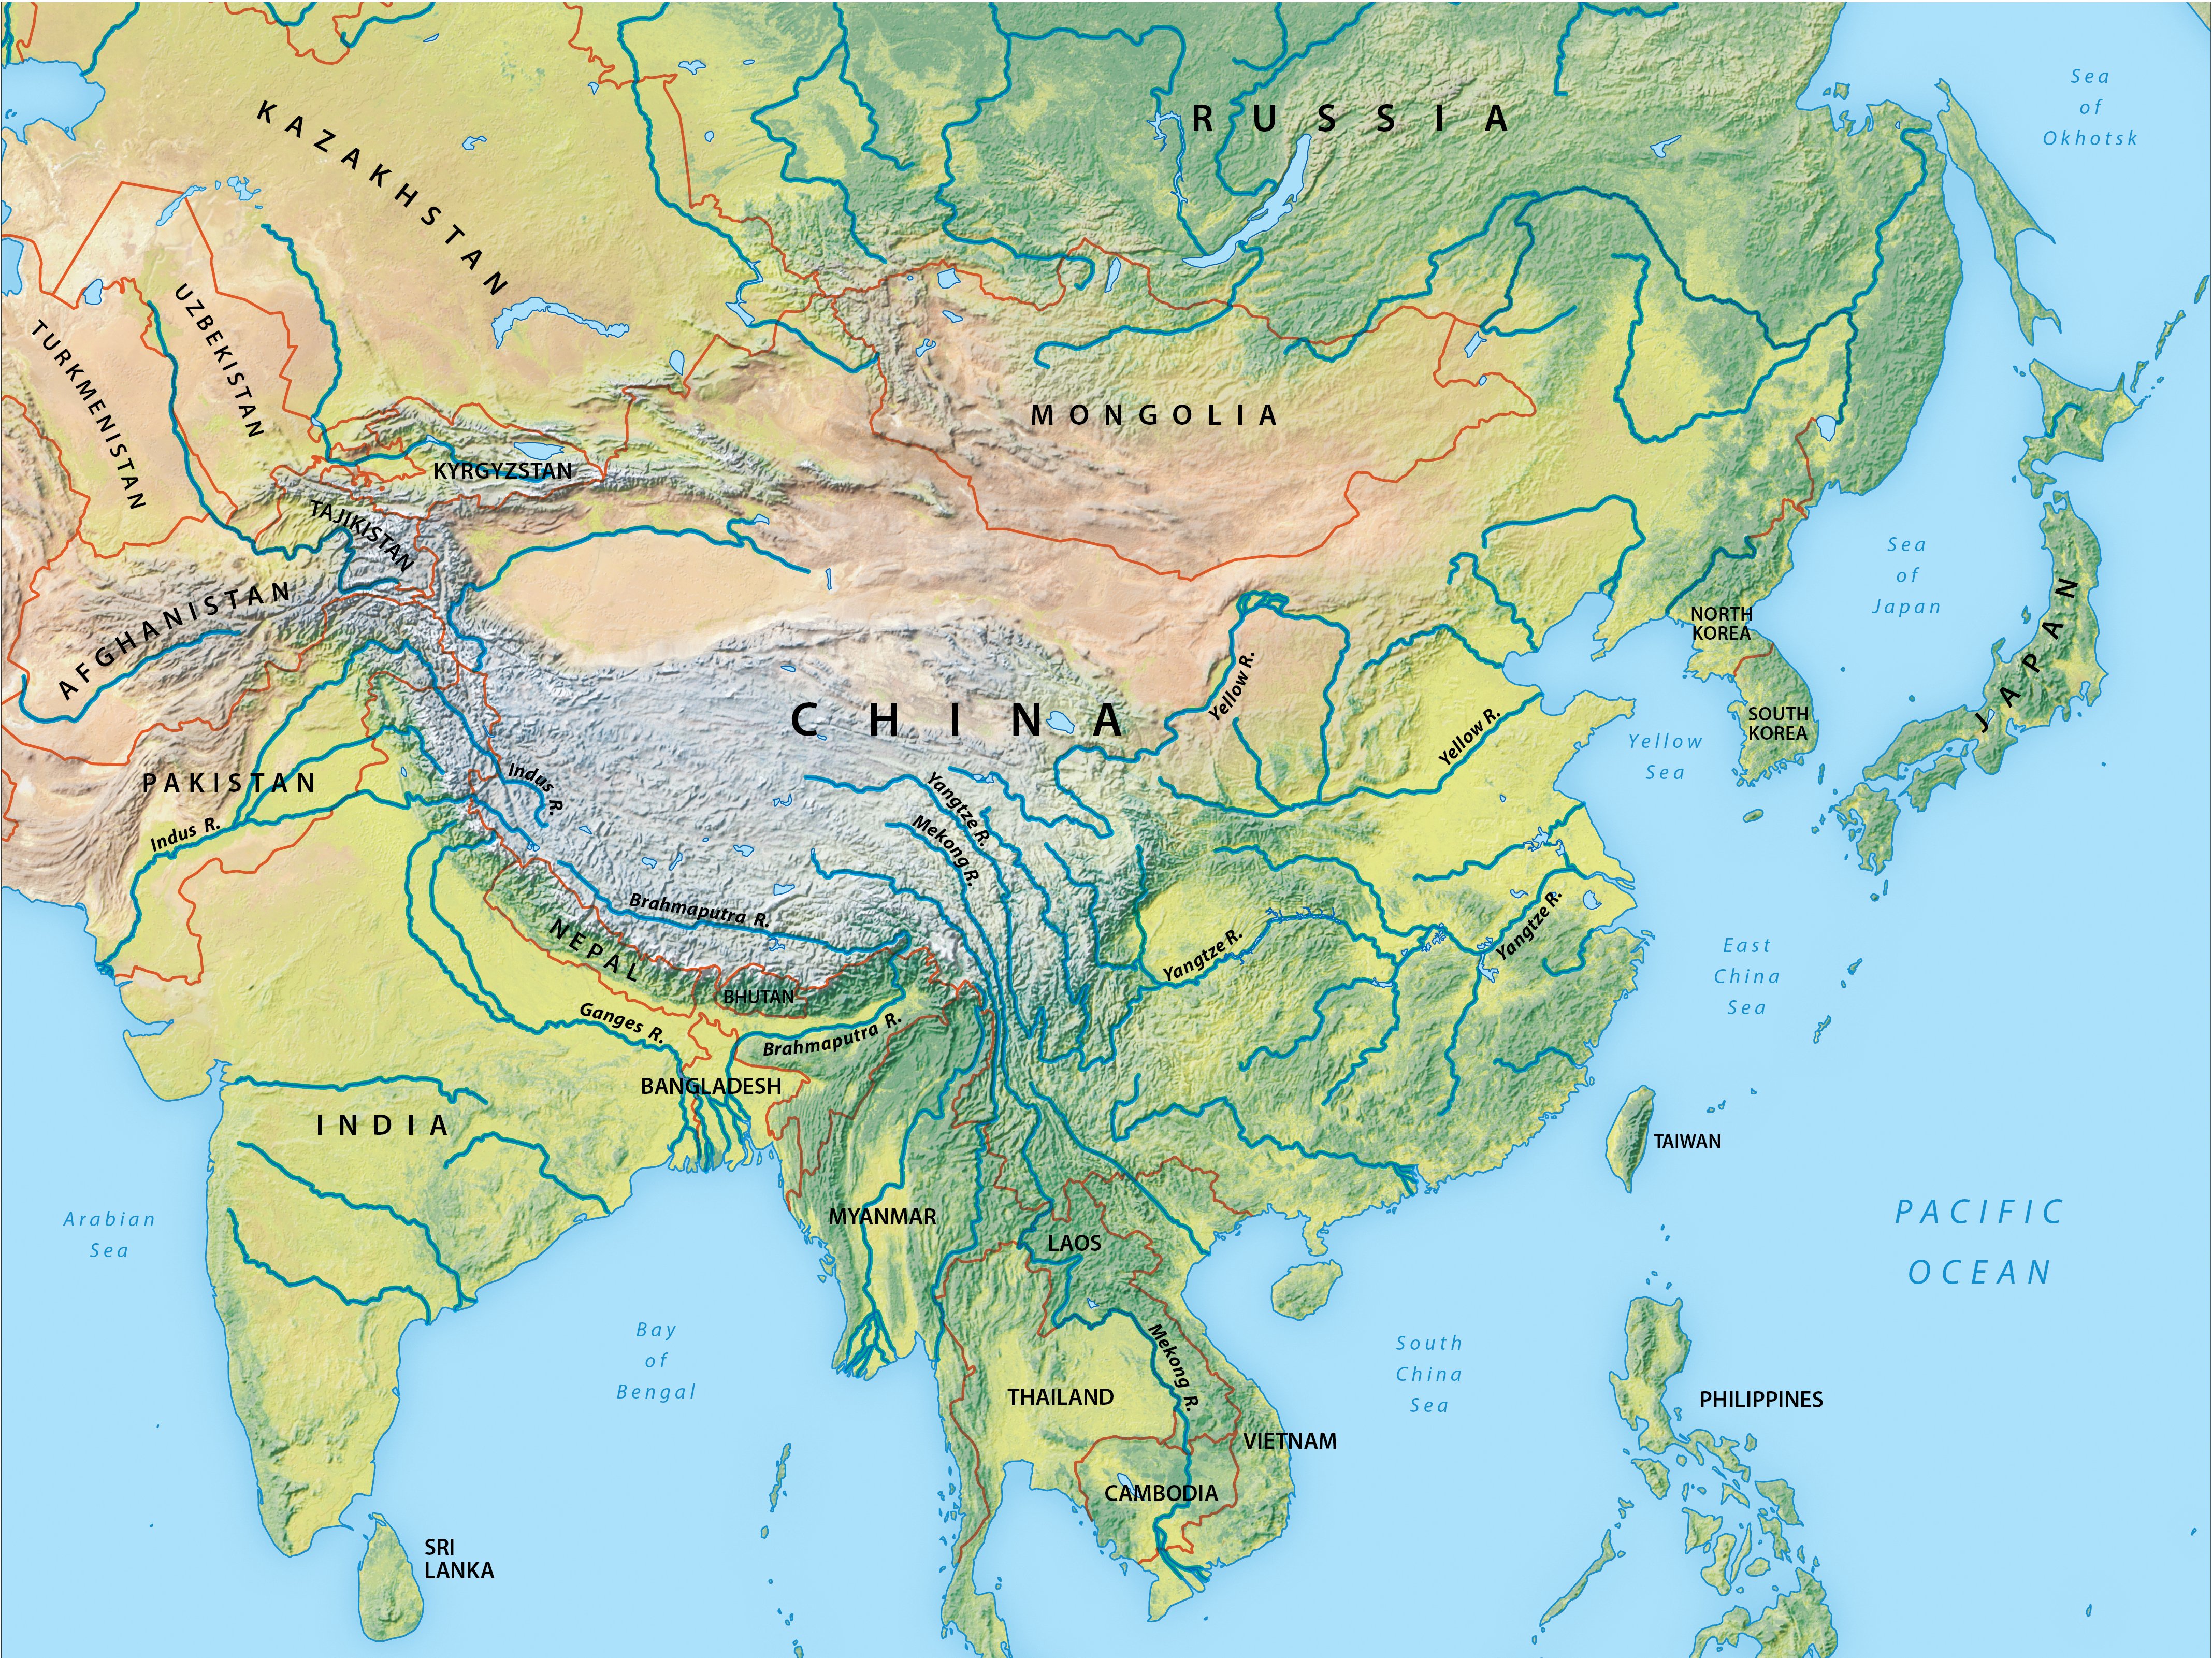 Назовите реки азии. Реки Азии на карте. Крупнейшие реки Азии на карте. Реки зарубежной Азии. Зарубежная Азия реки и озера на карте.